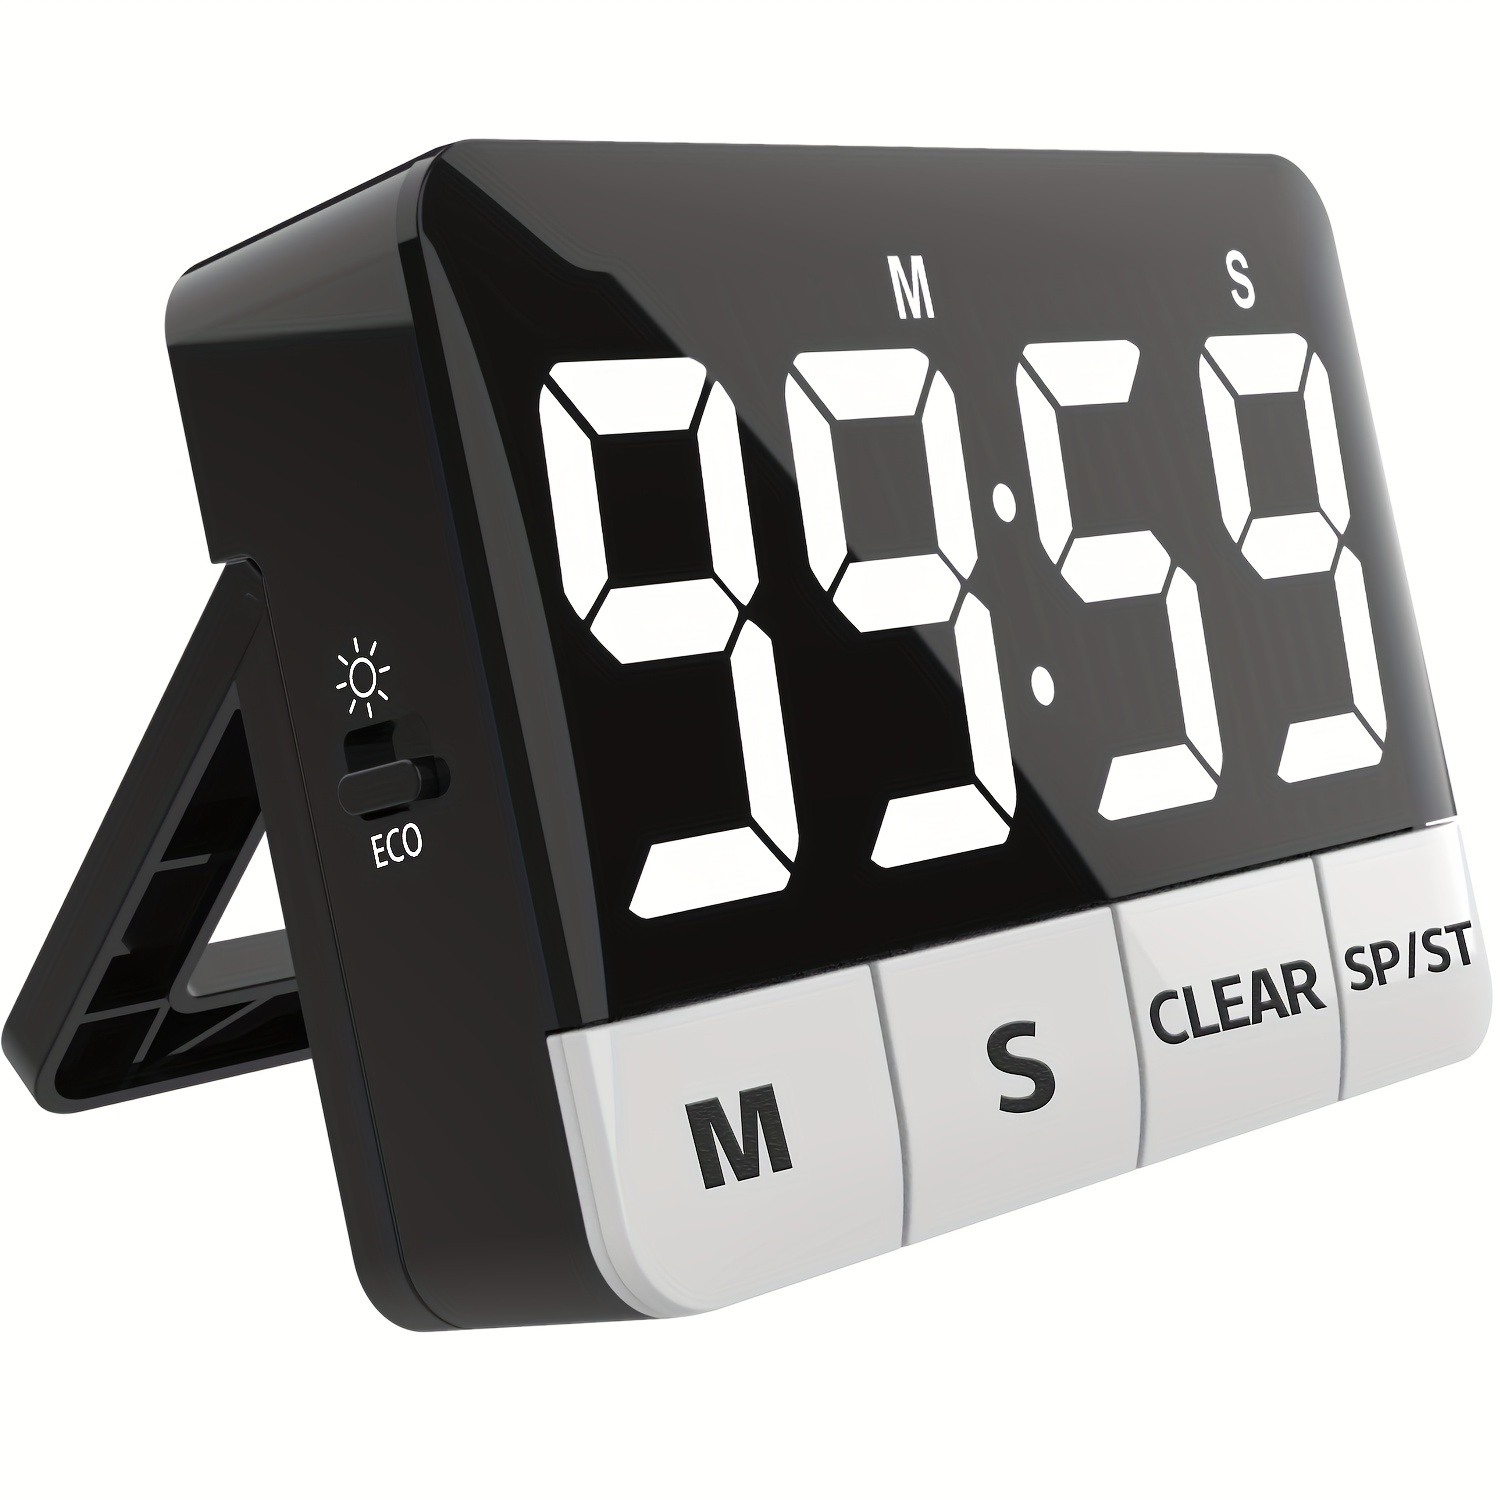 2 Digital kitchen timers for cooking large digital alarm for timer